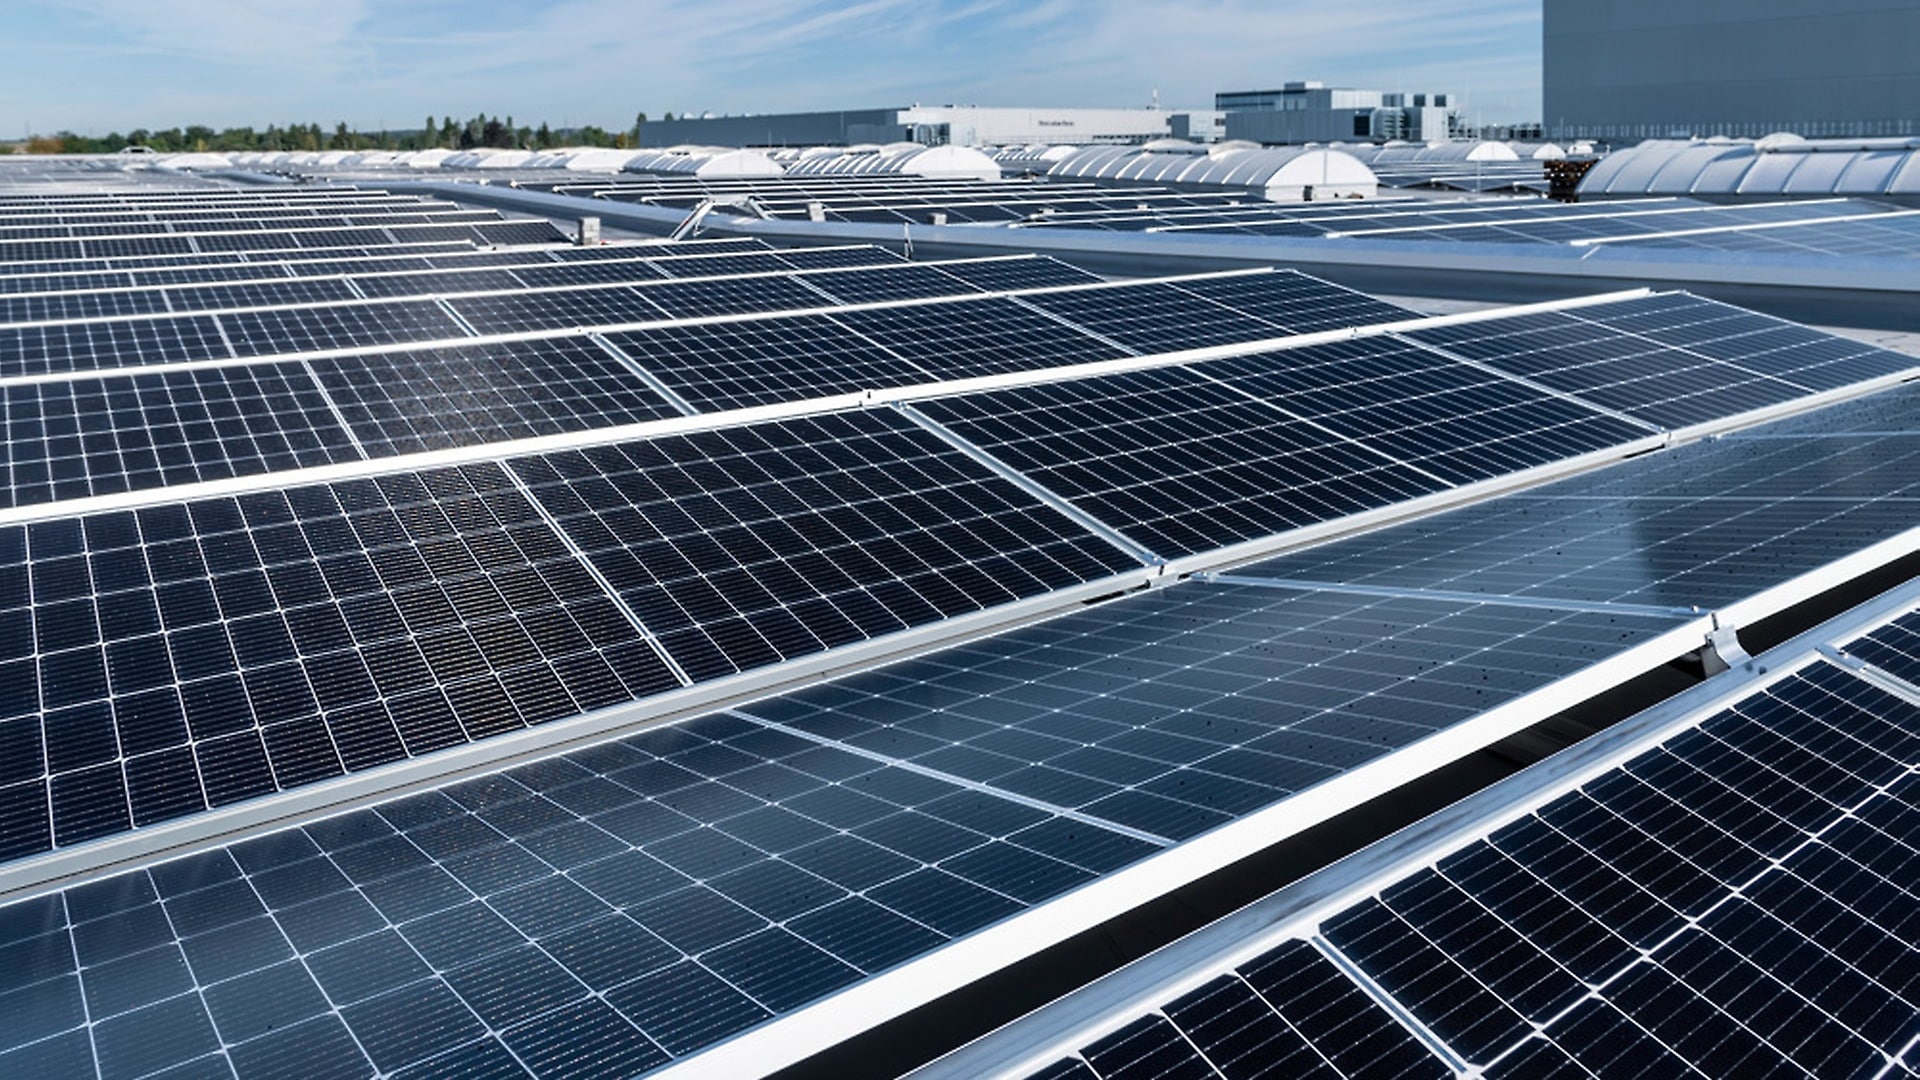 Auf dem Dach der Factory 56 befindet sich eine Photovoltaik-Anlage, die die Halle mit selbst erzeugtem, grüne m Strom versorgt.